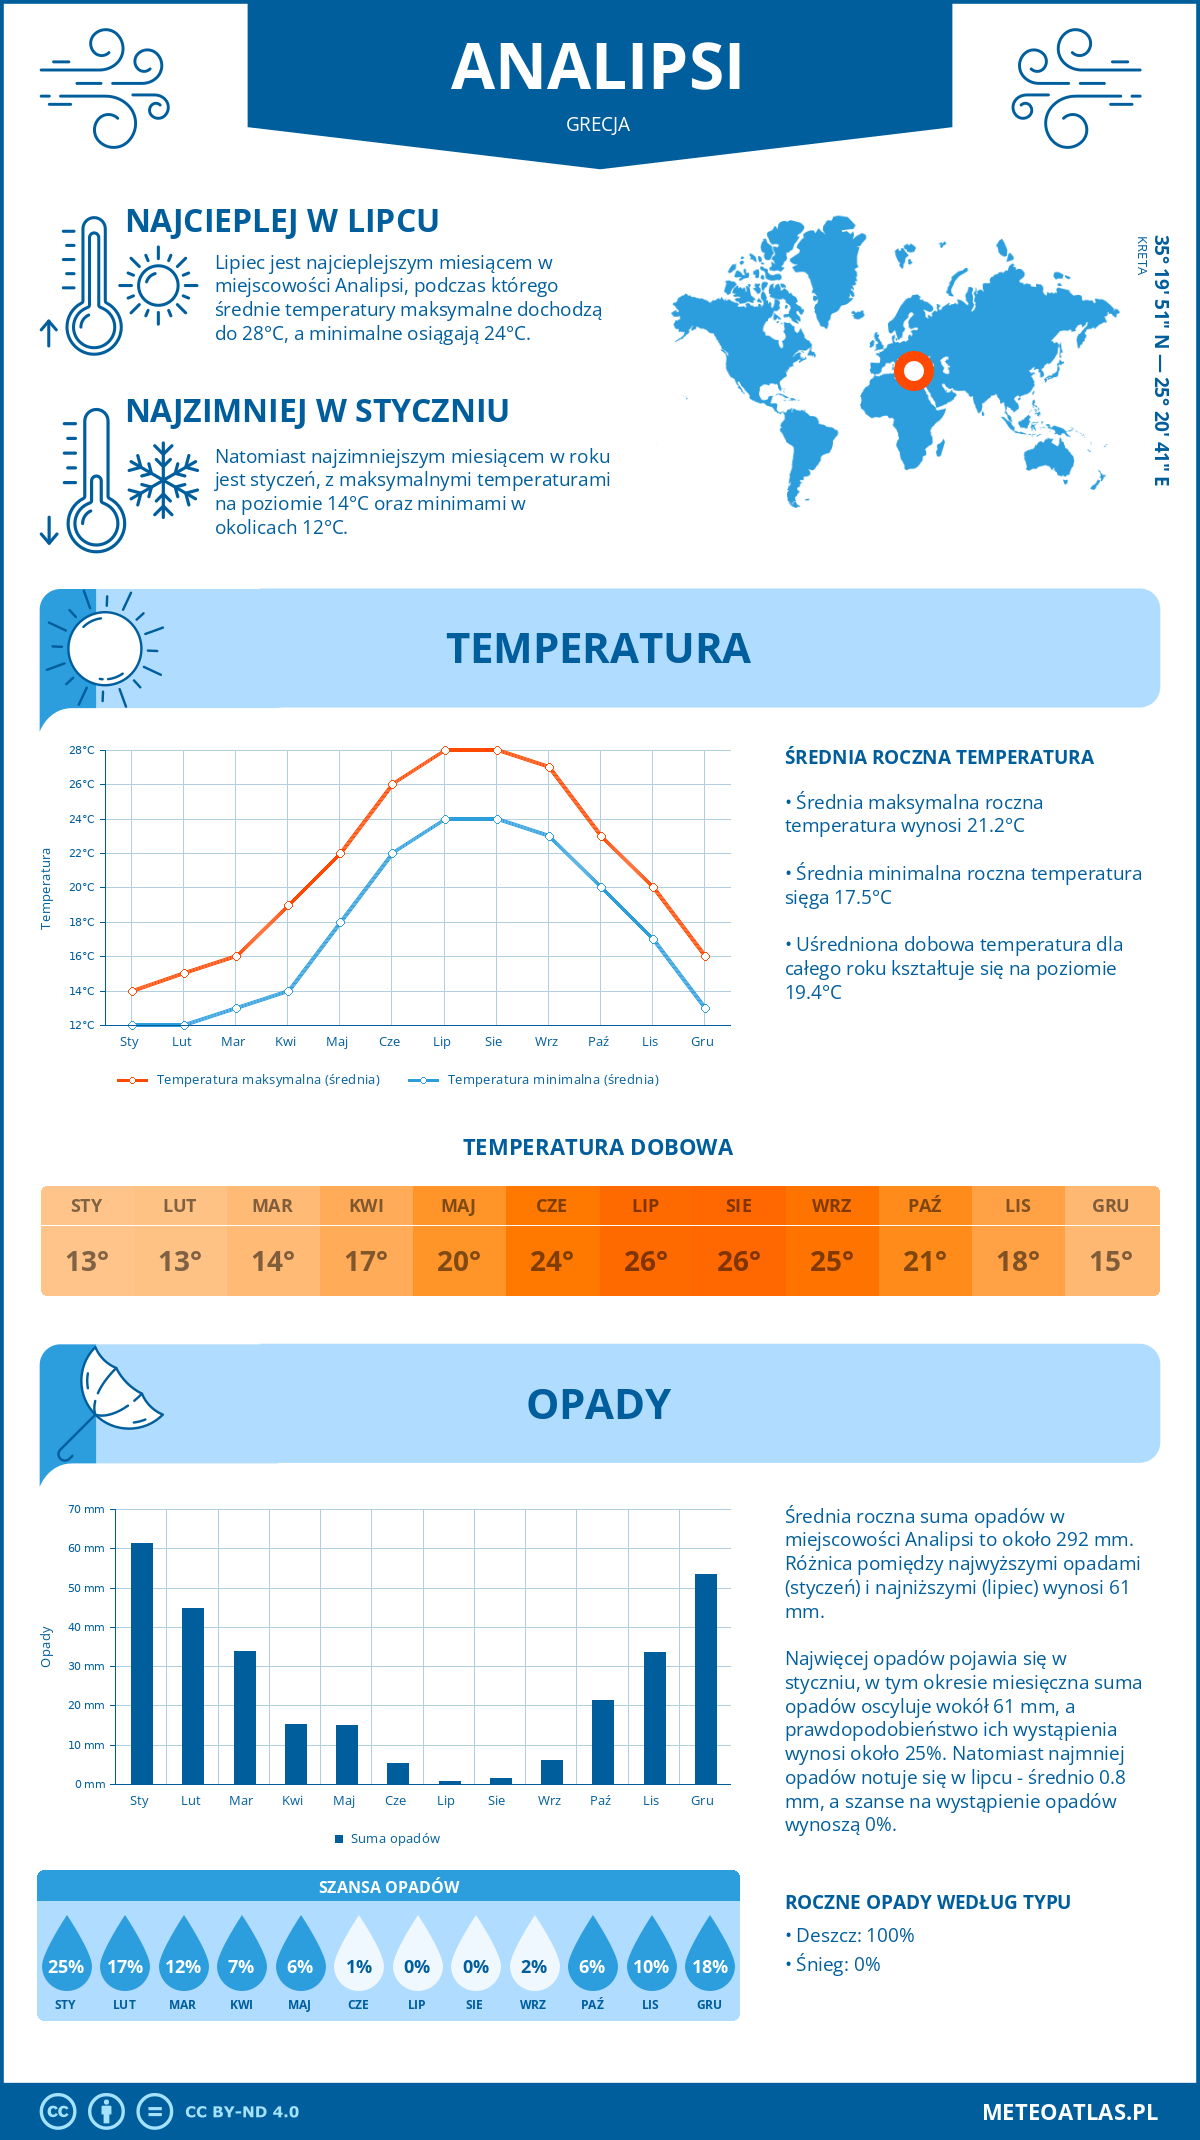 Pogoda Analipsi (Grecja). Temperatura oraz opady.